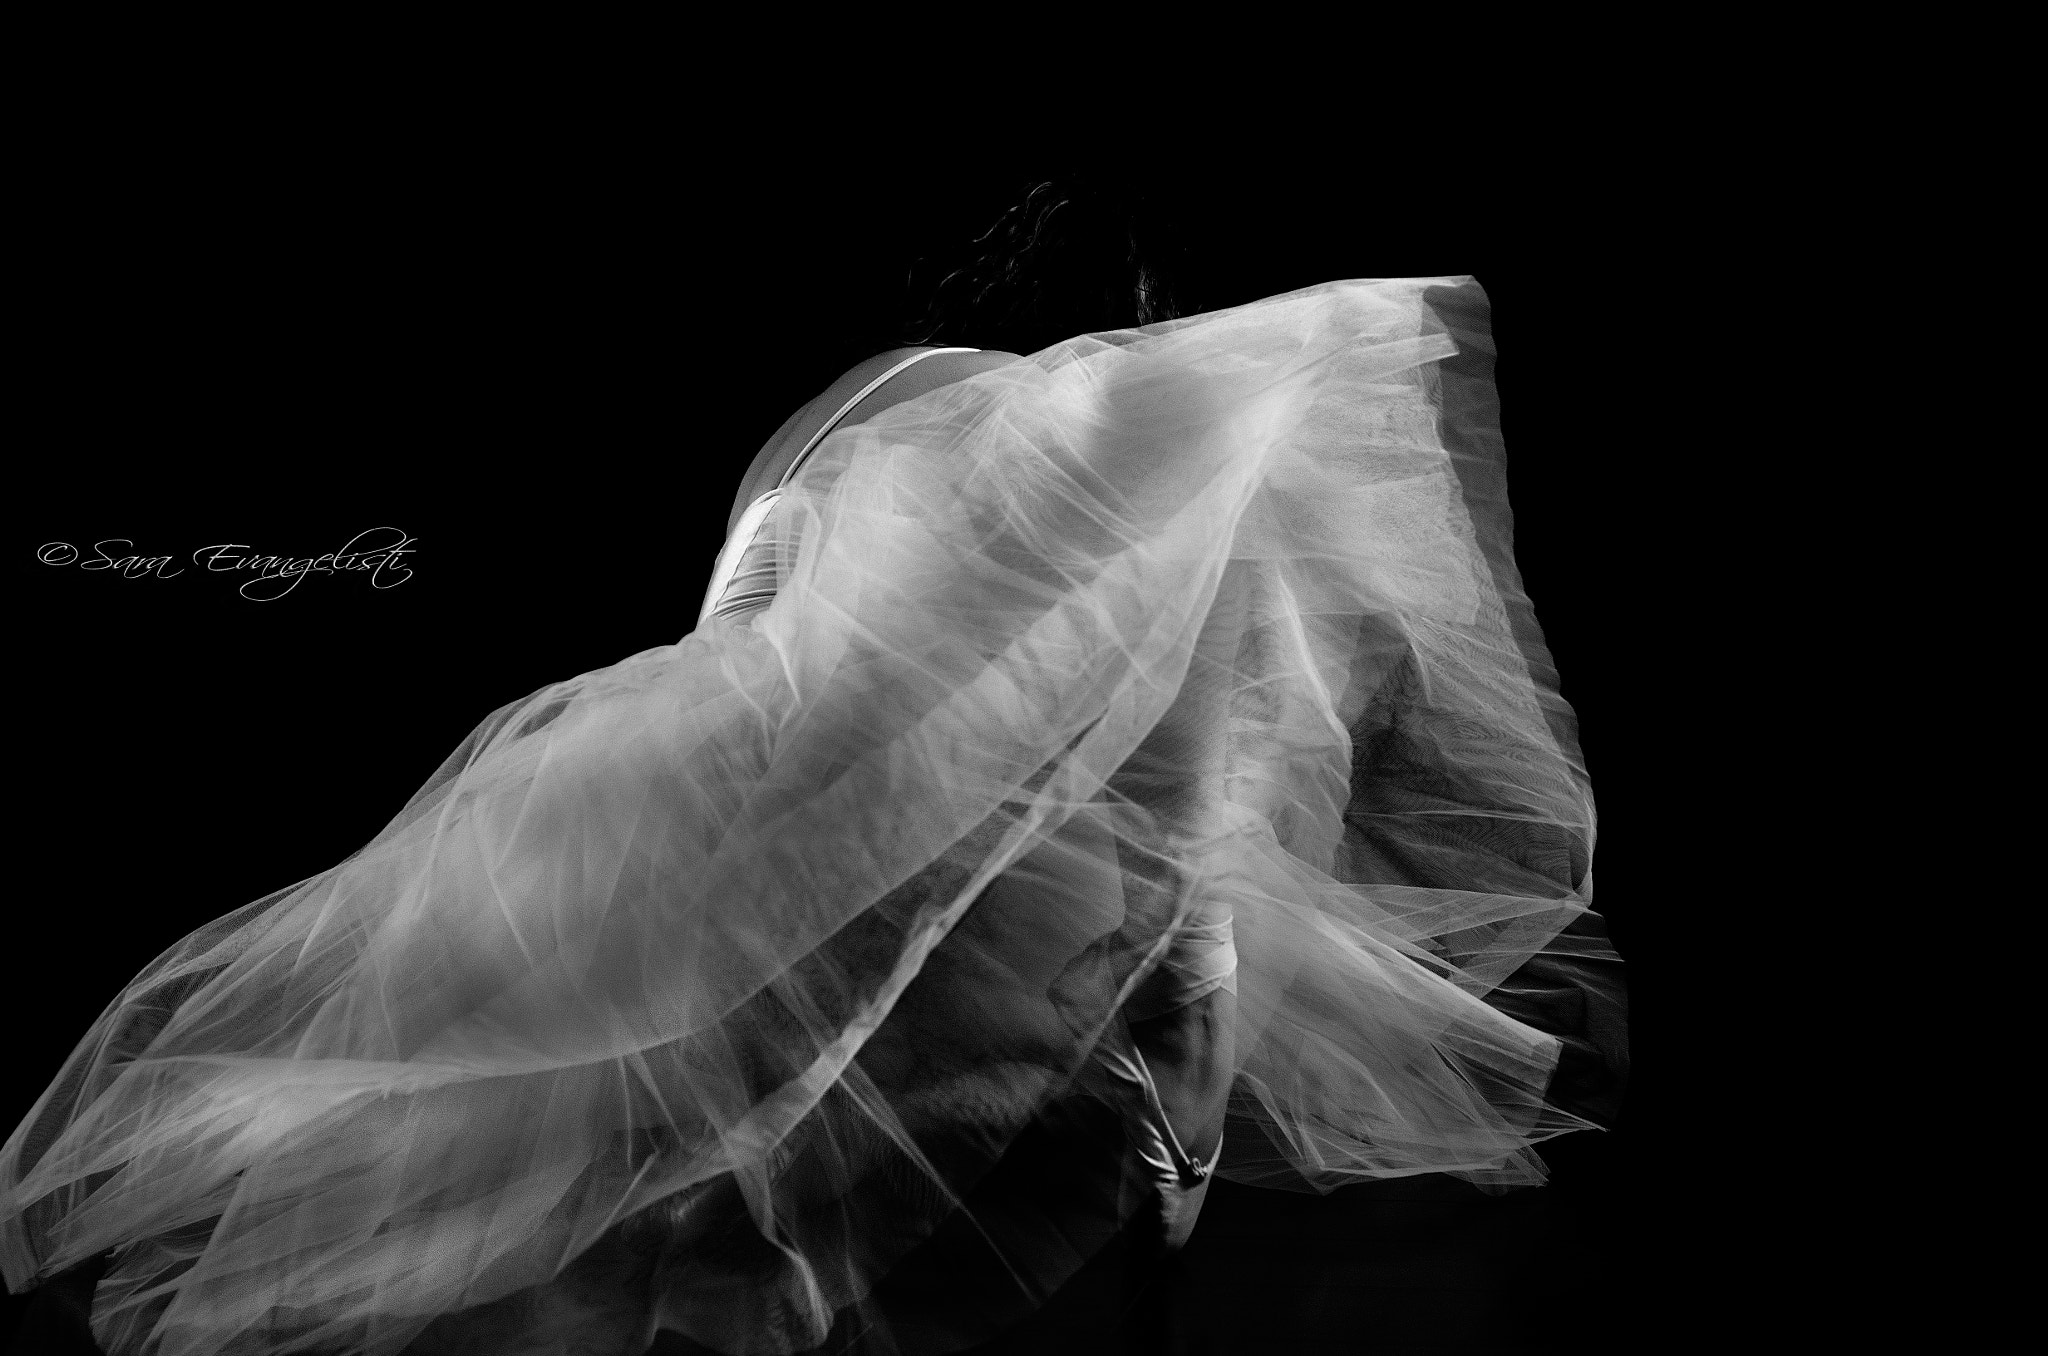 Nikon D5100 sample photo. La ballerina in bianco e nero photography